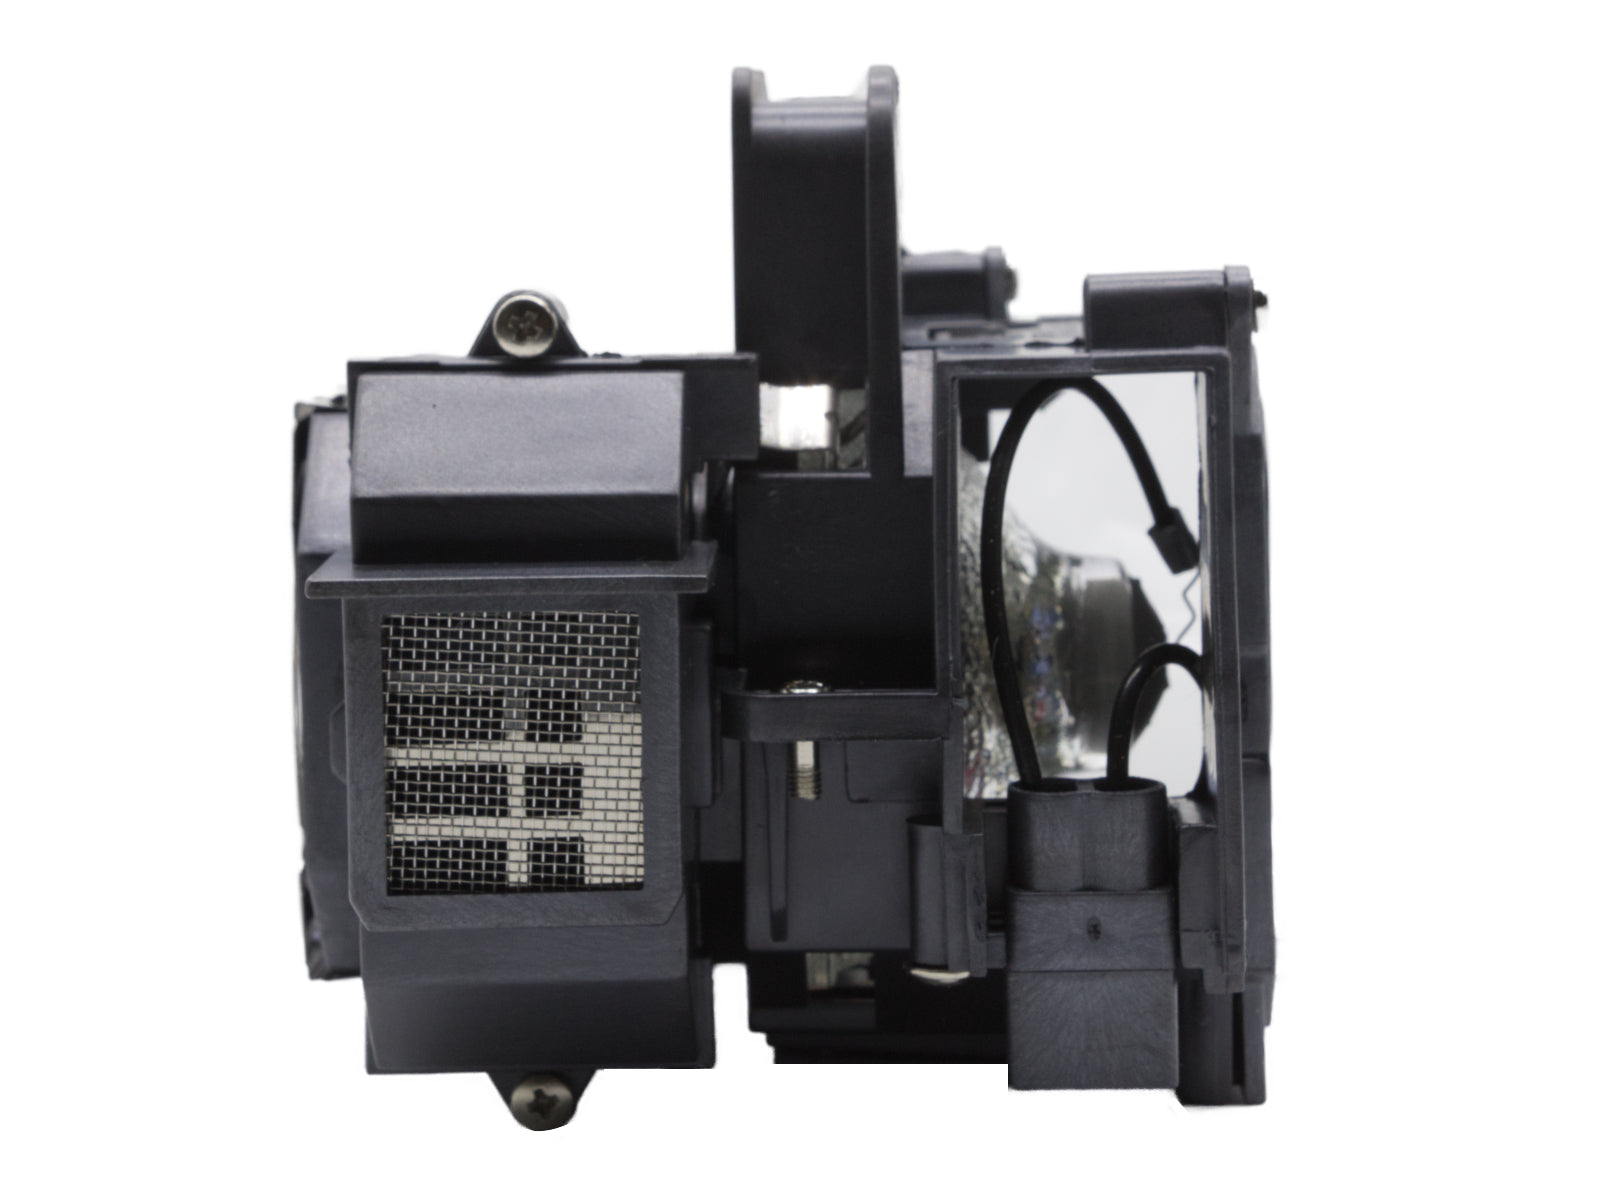 azurano Beamerlampe kompatibel mit EPSON ELPLP49, V13H010L49 für viele Epson Projektoren der EH-Serie, PowerLite-Serie, Home Cinema-Serie, Ensemble, Ersatzlampe mit Gehäuse, 200W - Bild 6